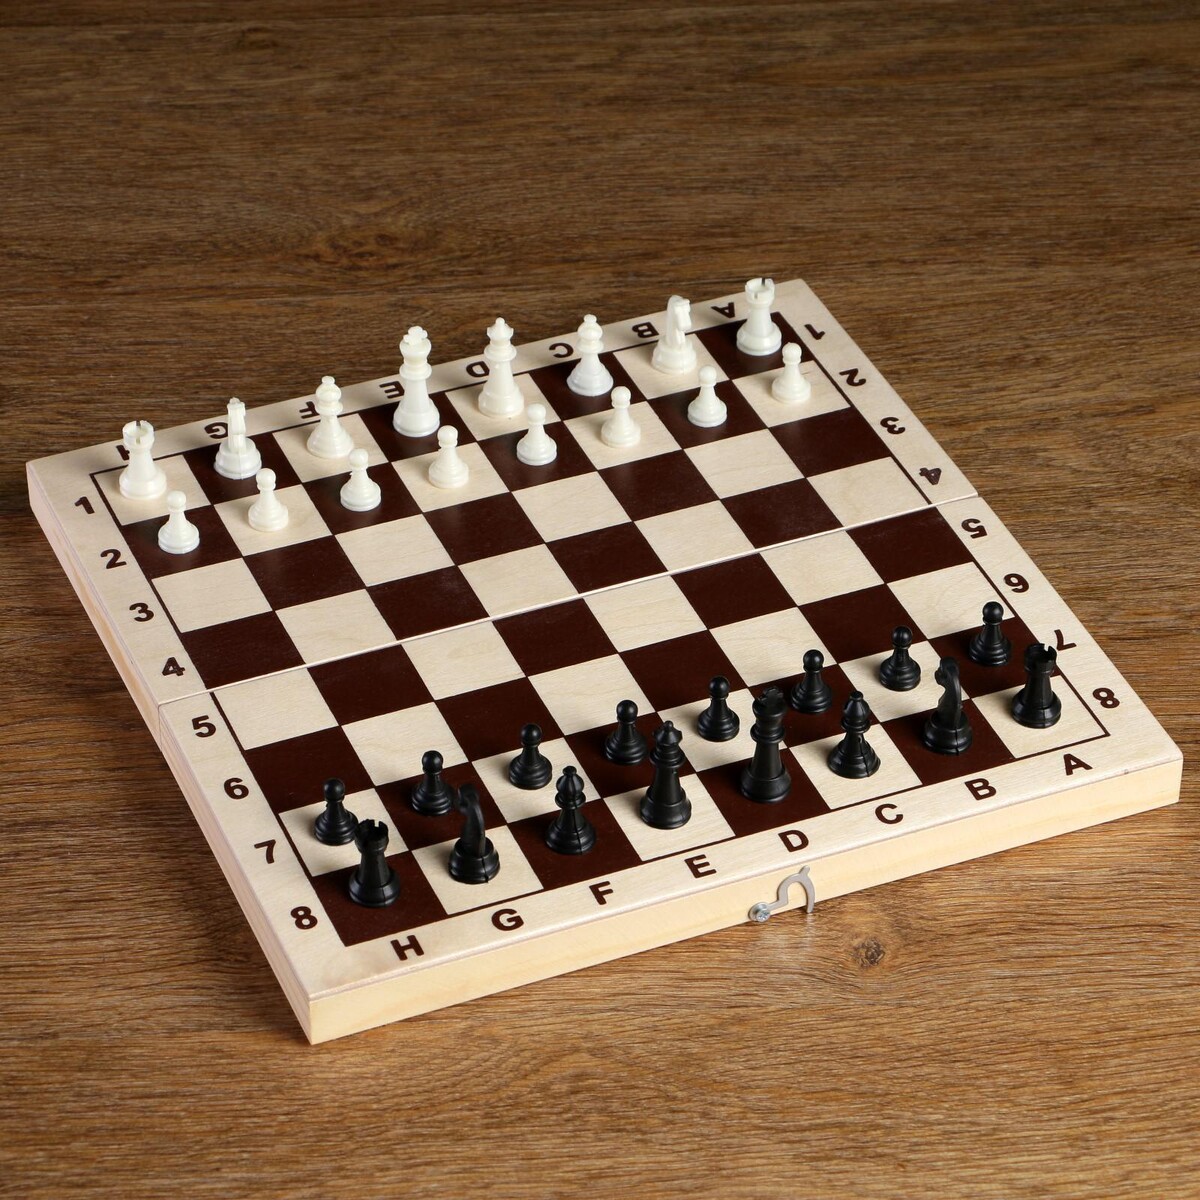 Шахматные фигуры, пластик, король h-4.2 см, пешка h-2 см шахматные фигуры обиходные король h 7 см пешка 4 см пластик